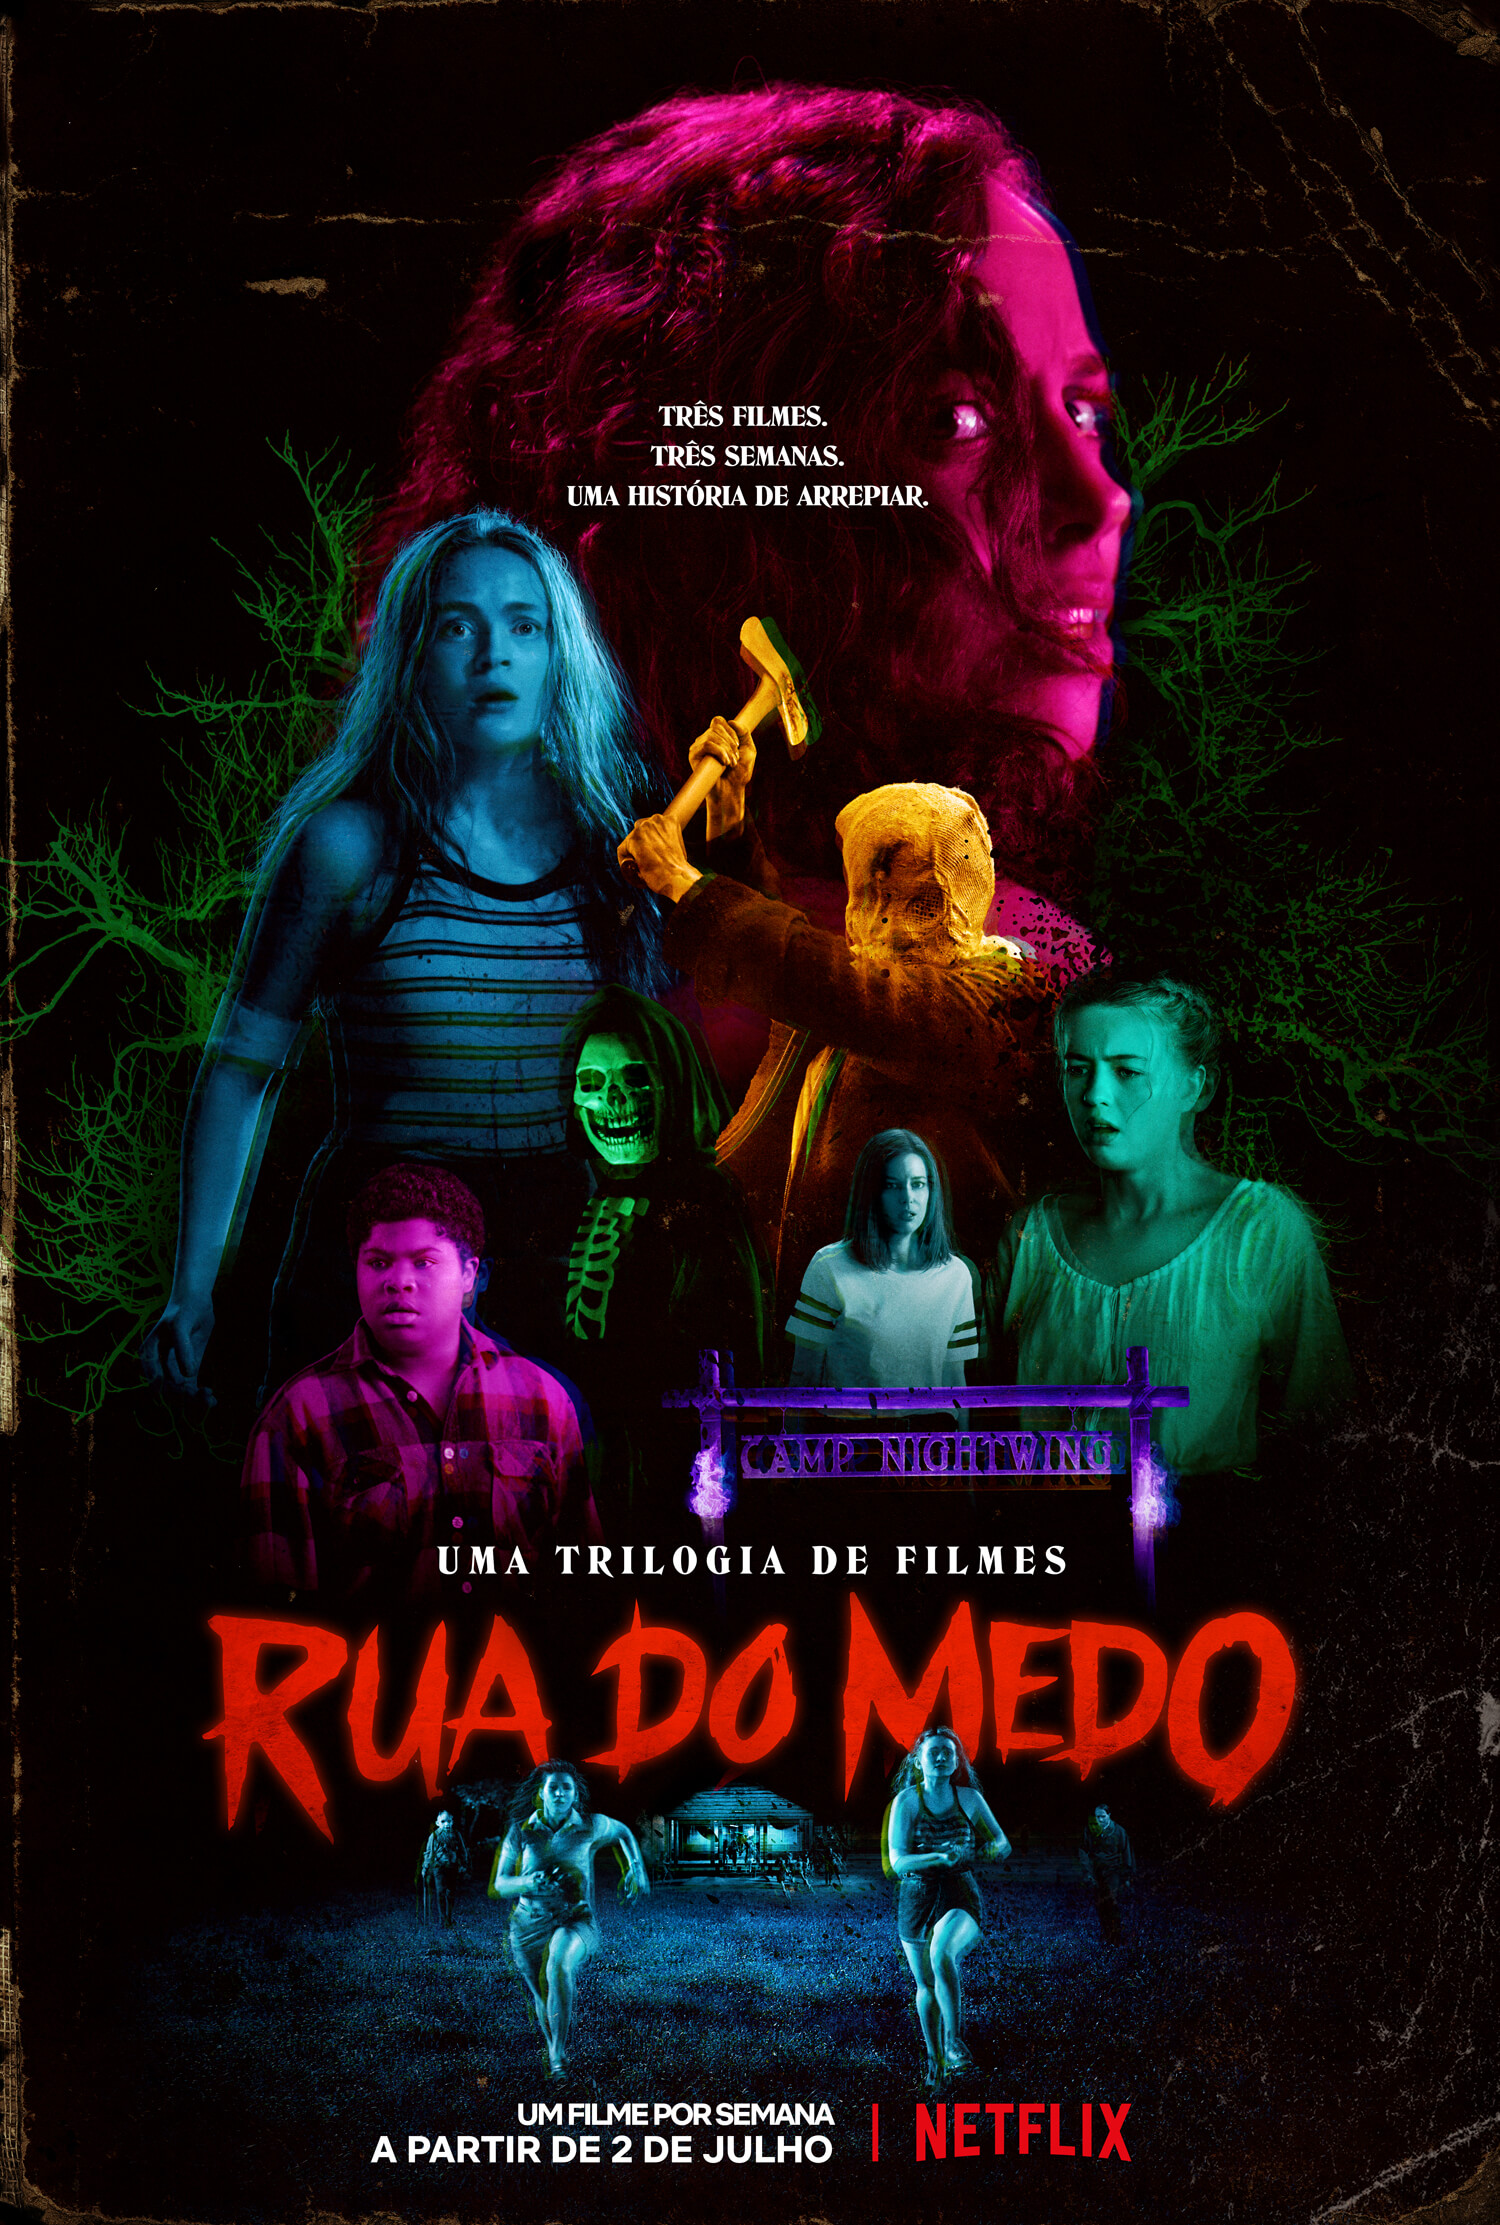 Trilogia Rua do Medo ganha trailer completo e pôster oficial - Estreia em julho na Netflix